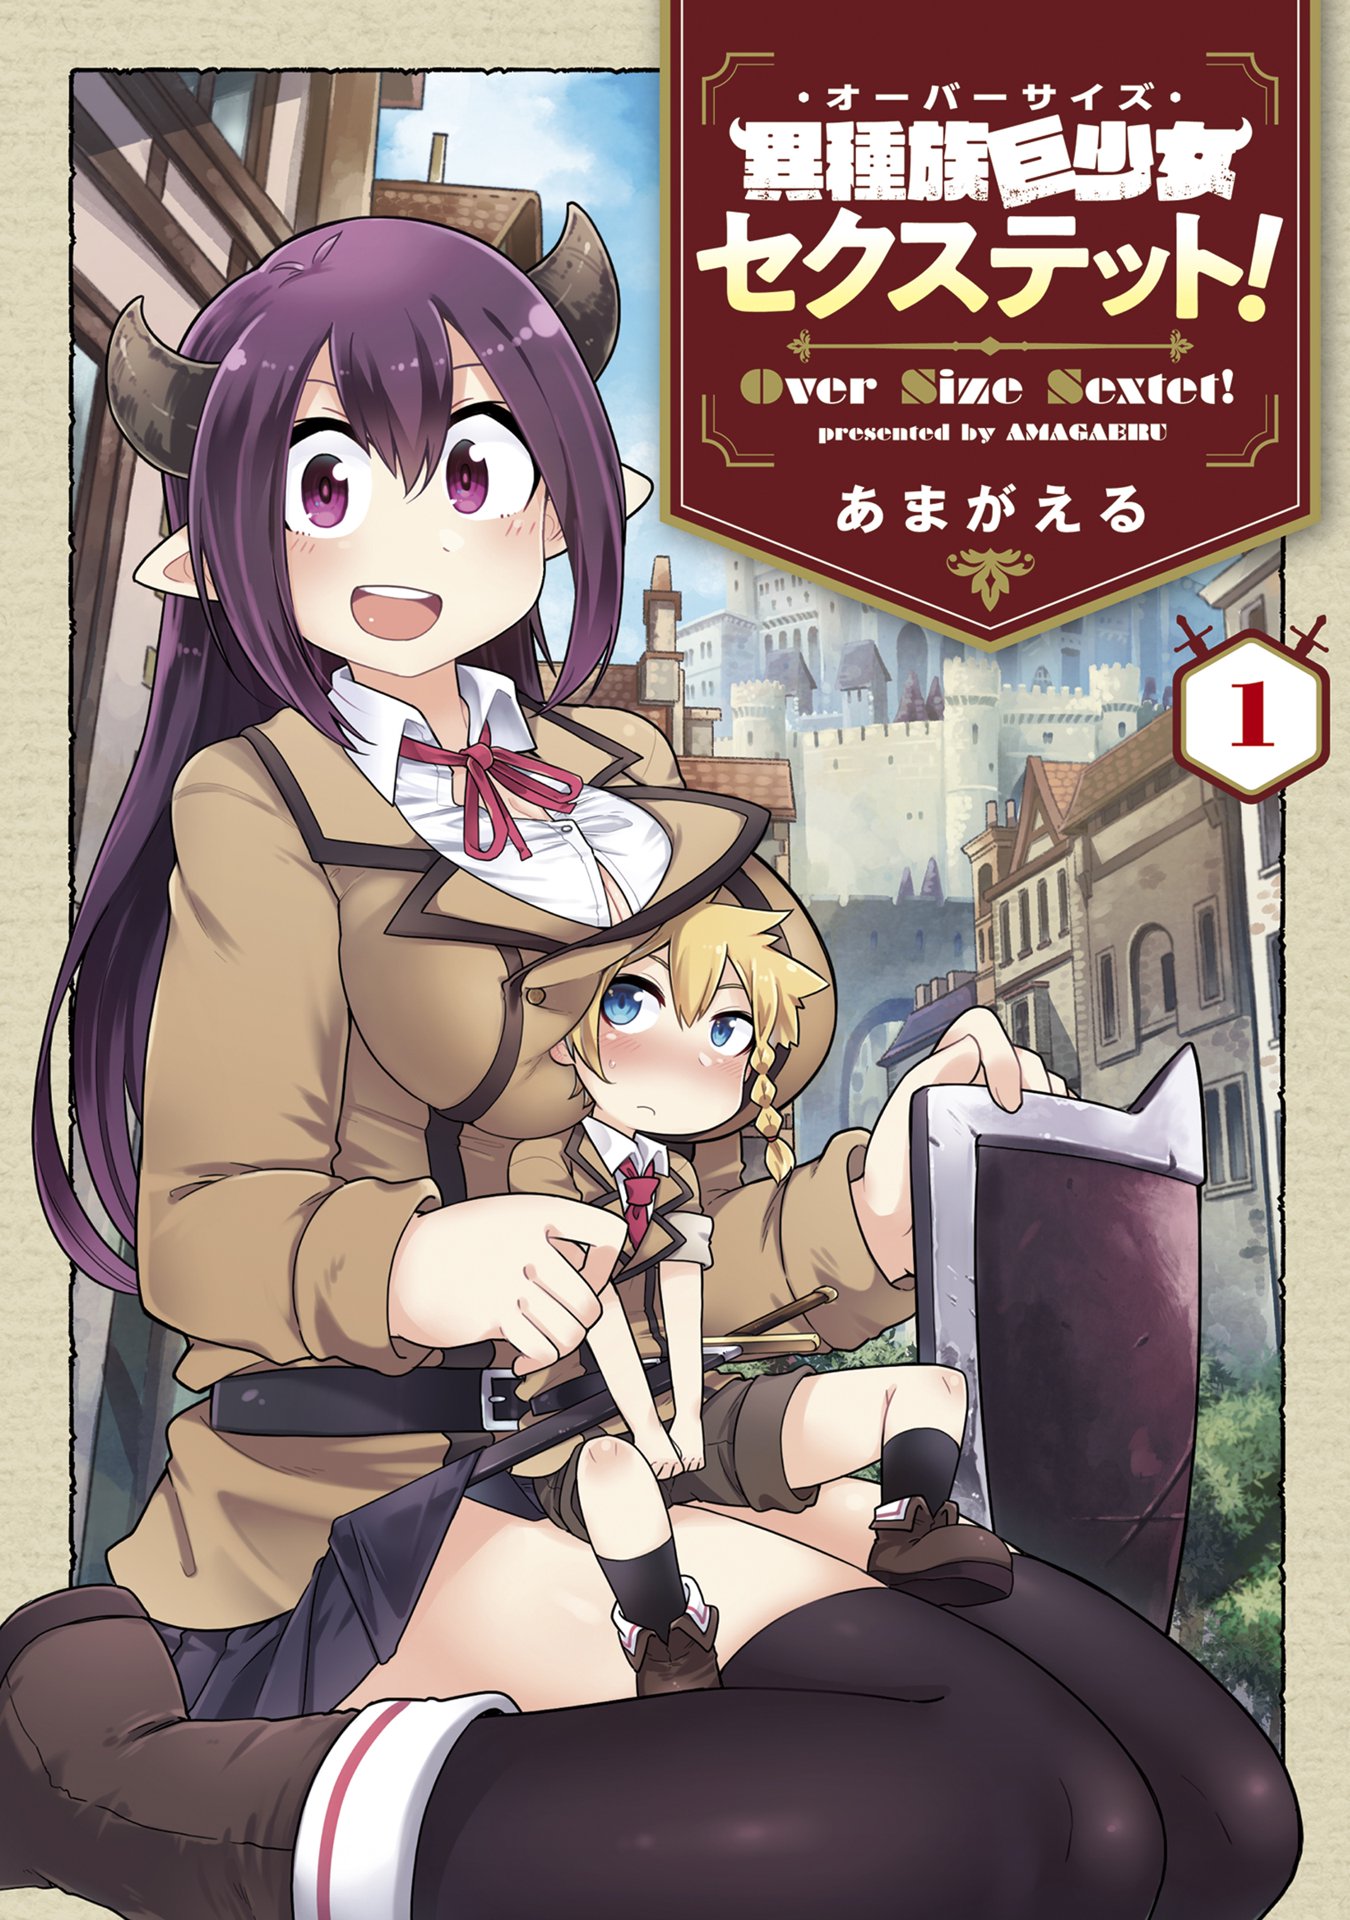 Oversized Sextet Manga